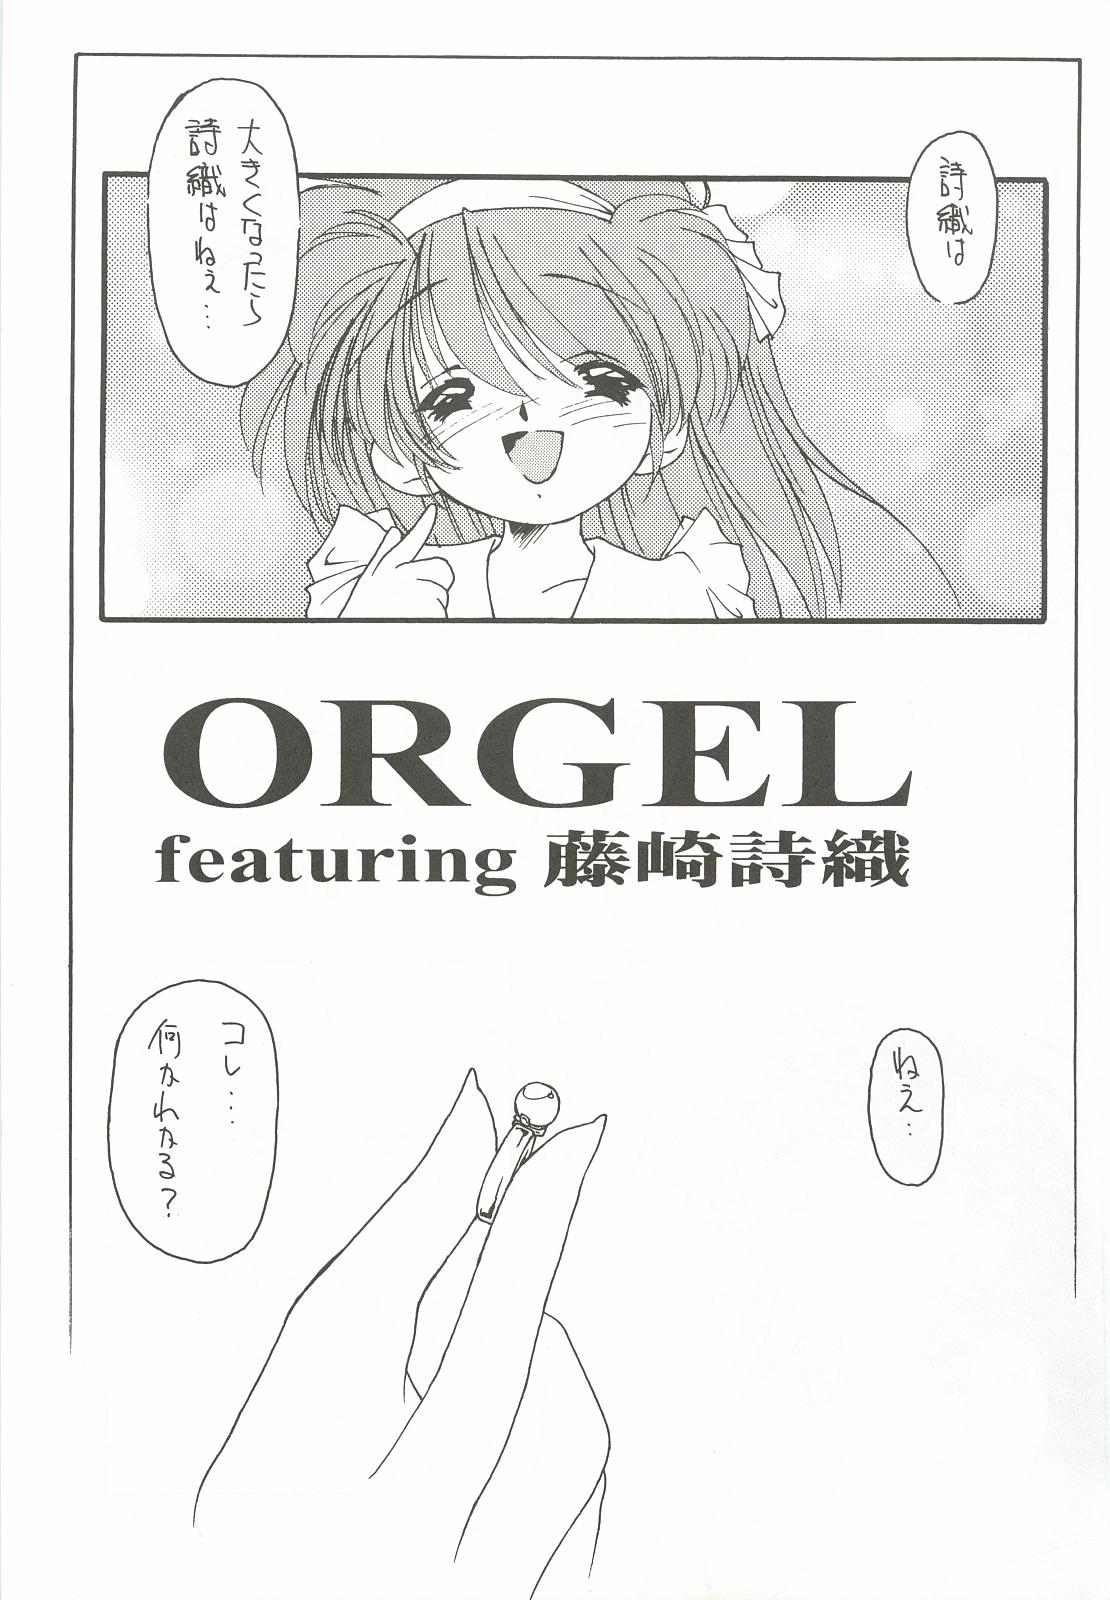 ORGEL 2 featuring Fujisaki Shiori 7